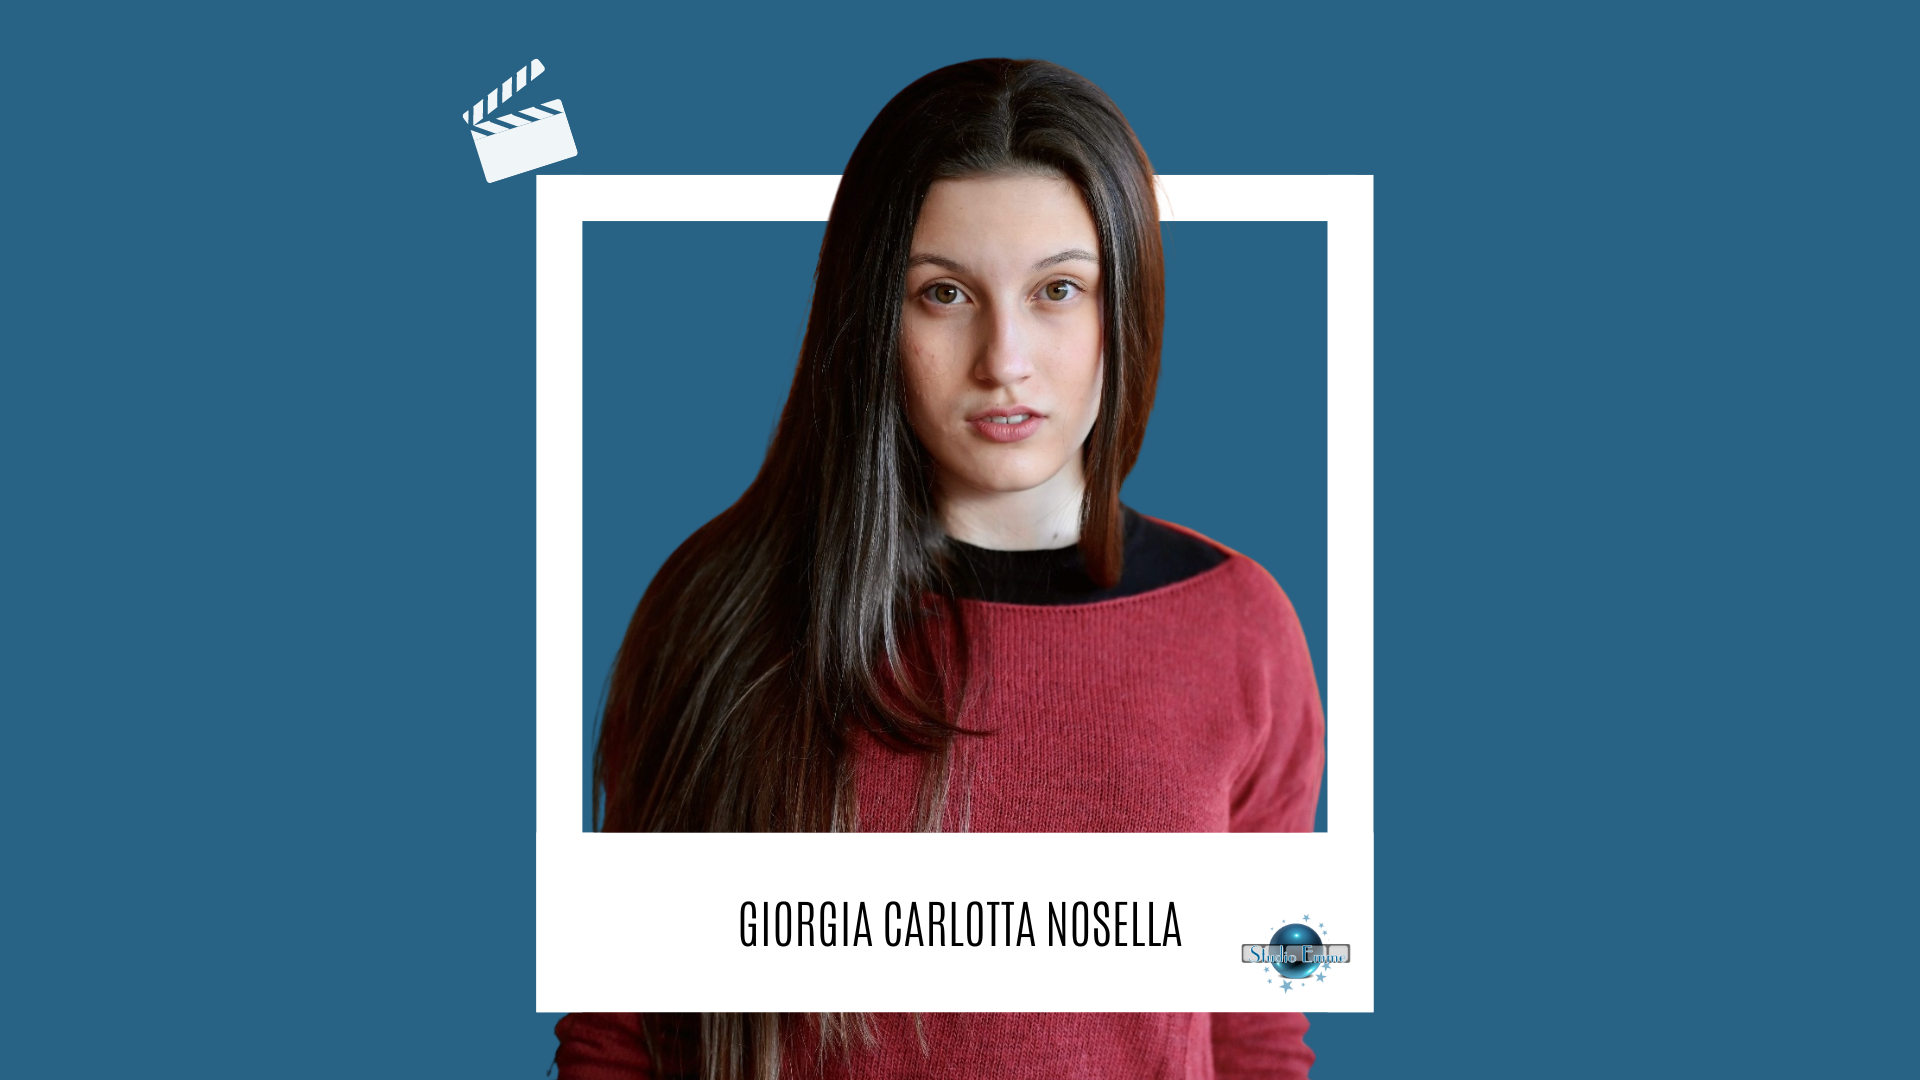 Giorgia Carlotta Nosella interpreta Sibilla ne "L'ordine del tempo" ⏳